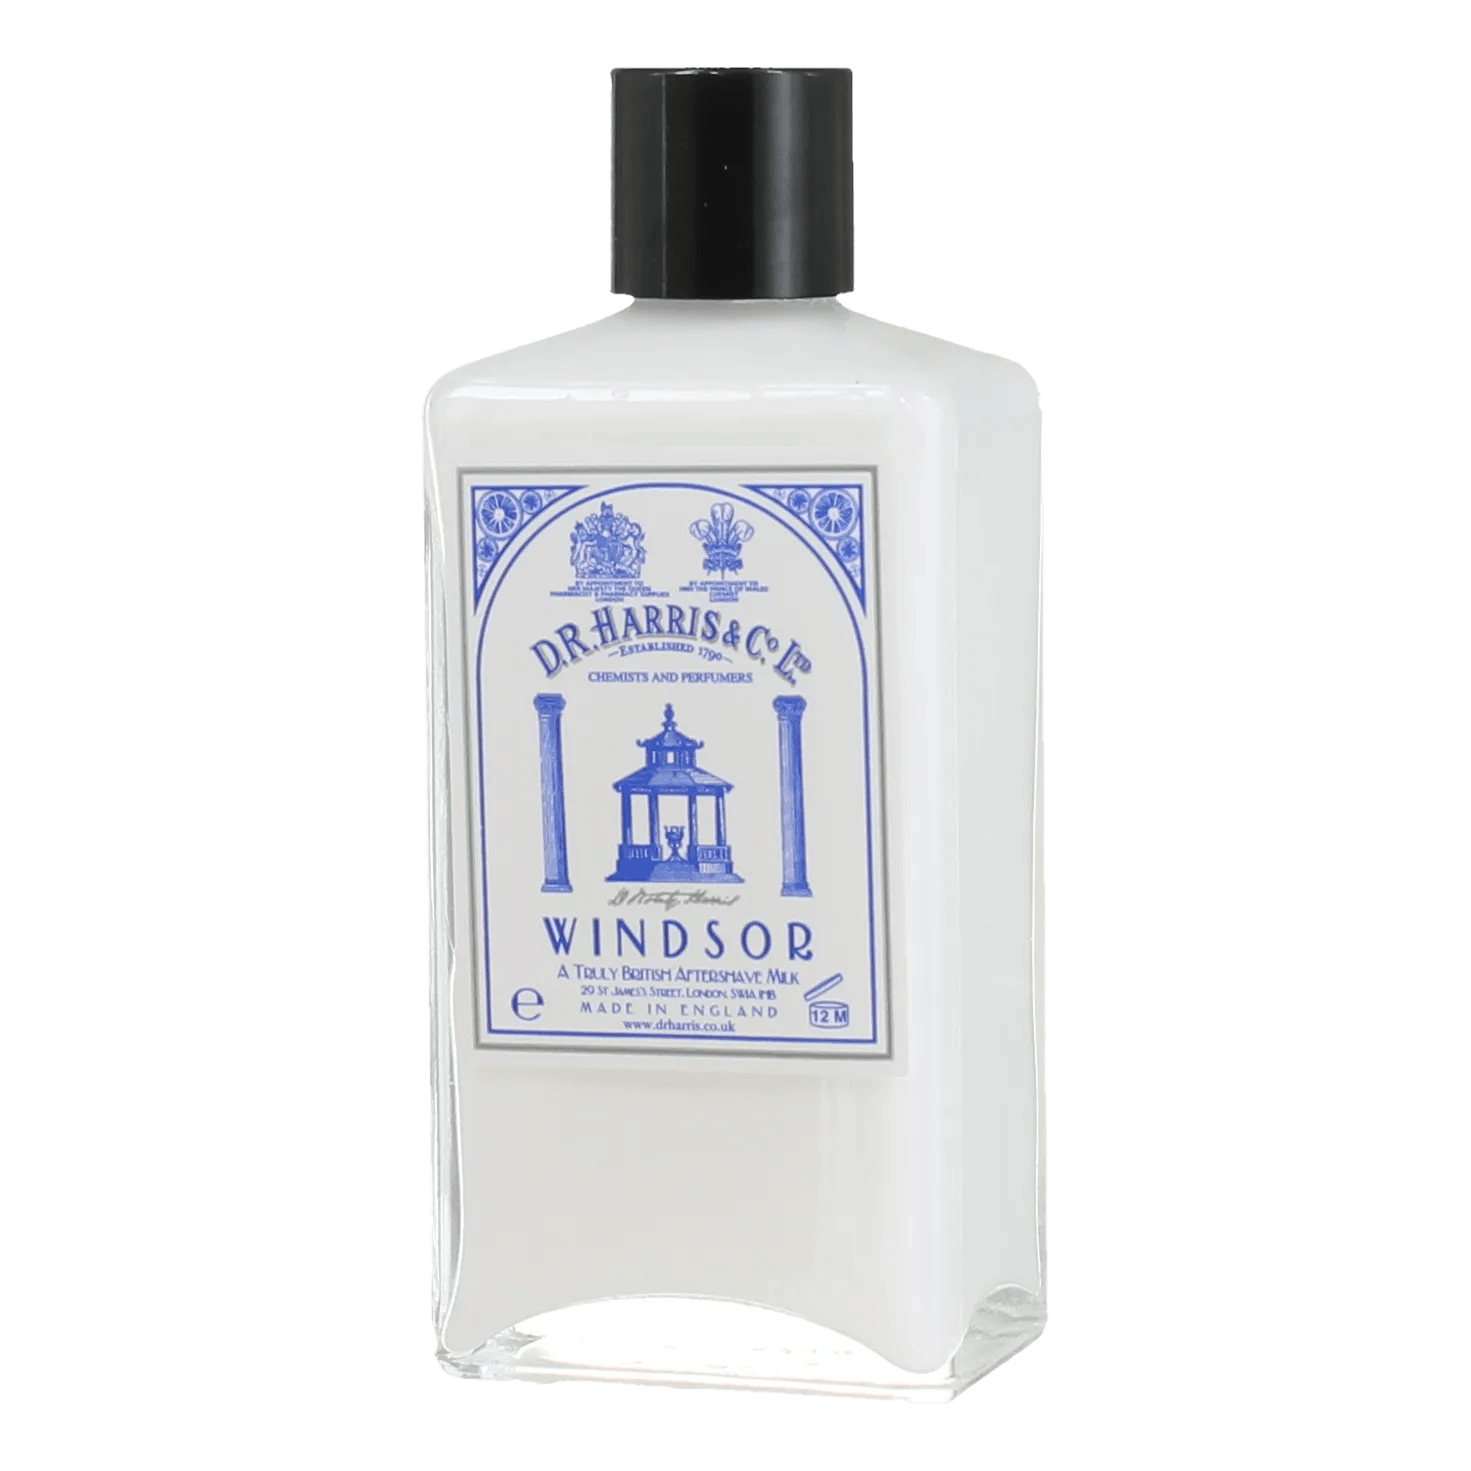 D. R. Harris Aftershave Milk - Windsor